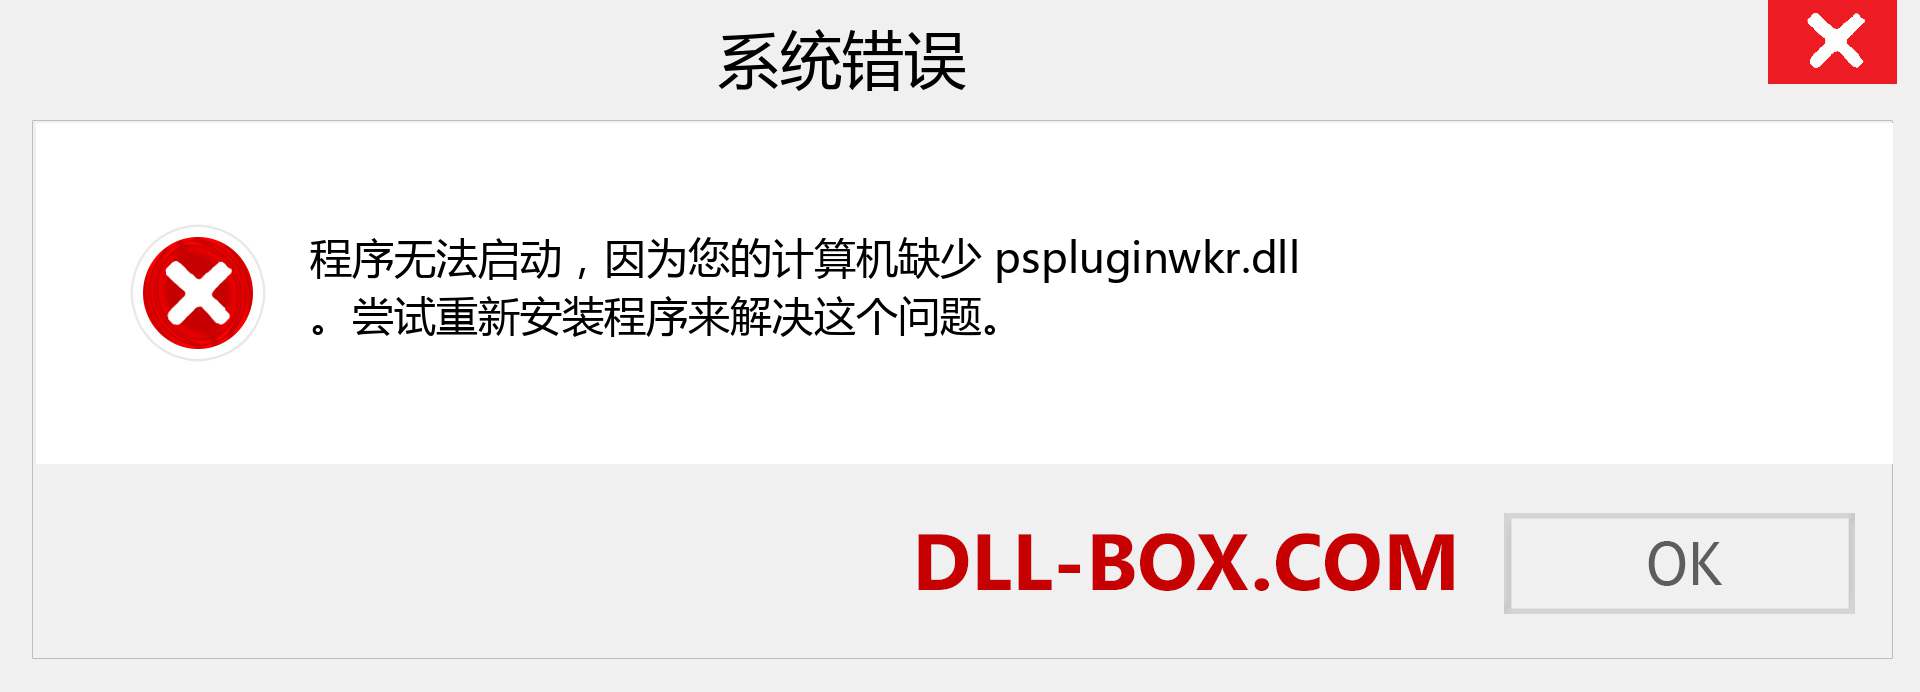 pspluginwkr.dll 文件丢失？。 适用于 Windows 7、8、10 的下载 - 修复 Windows、照片、图像上的 pspluginwkr dll 丢失错误